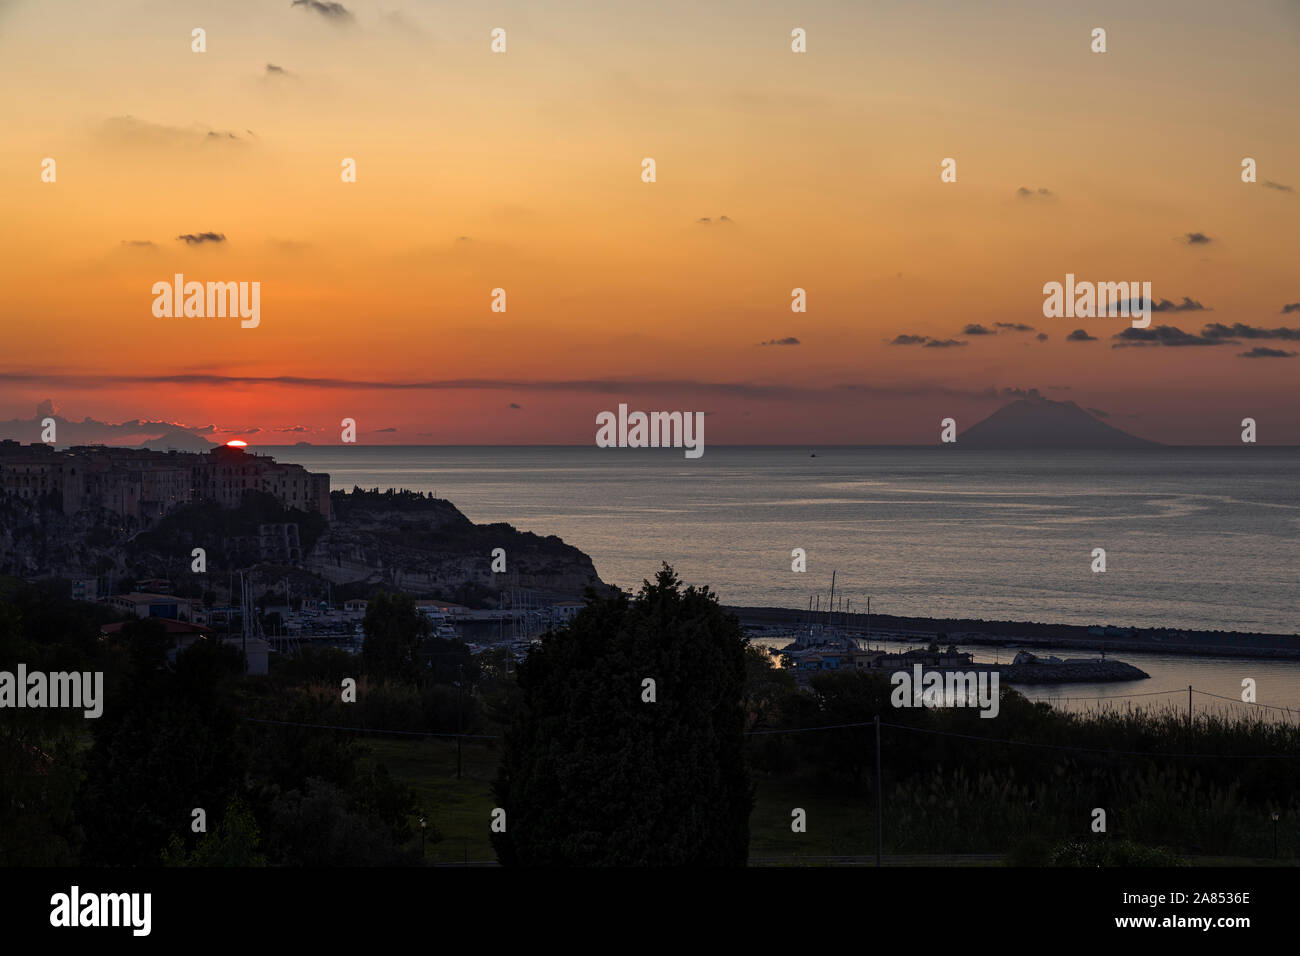 Vierte in Folge von fünf Bilder von Sonnenuntergang über dem Meer in Tropea Italien Stockfoto